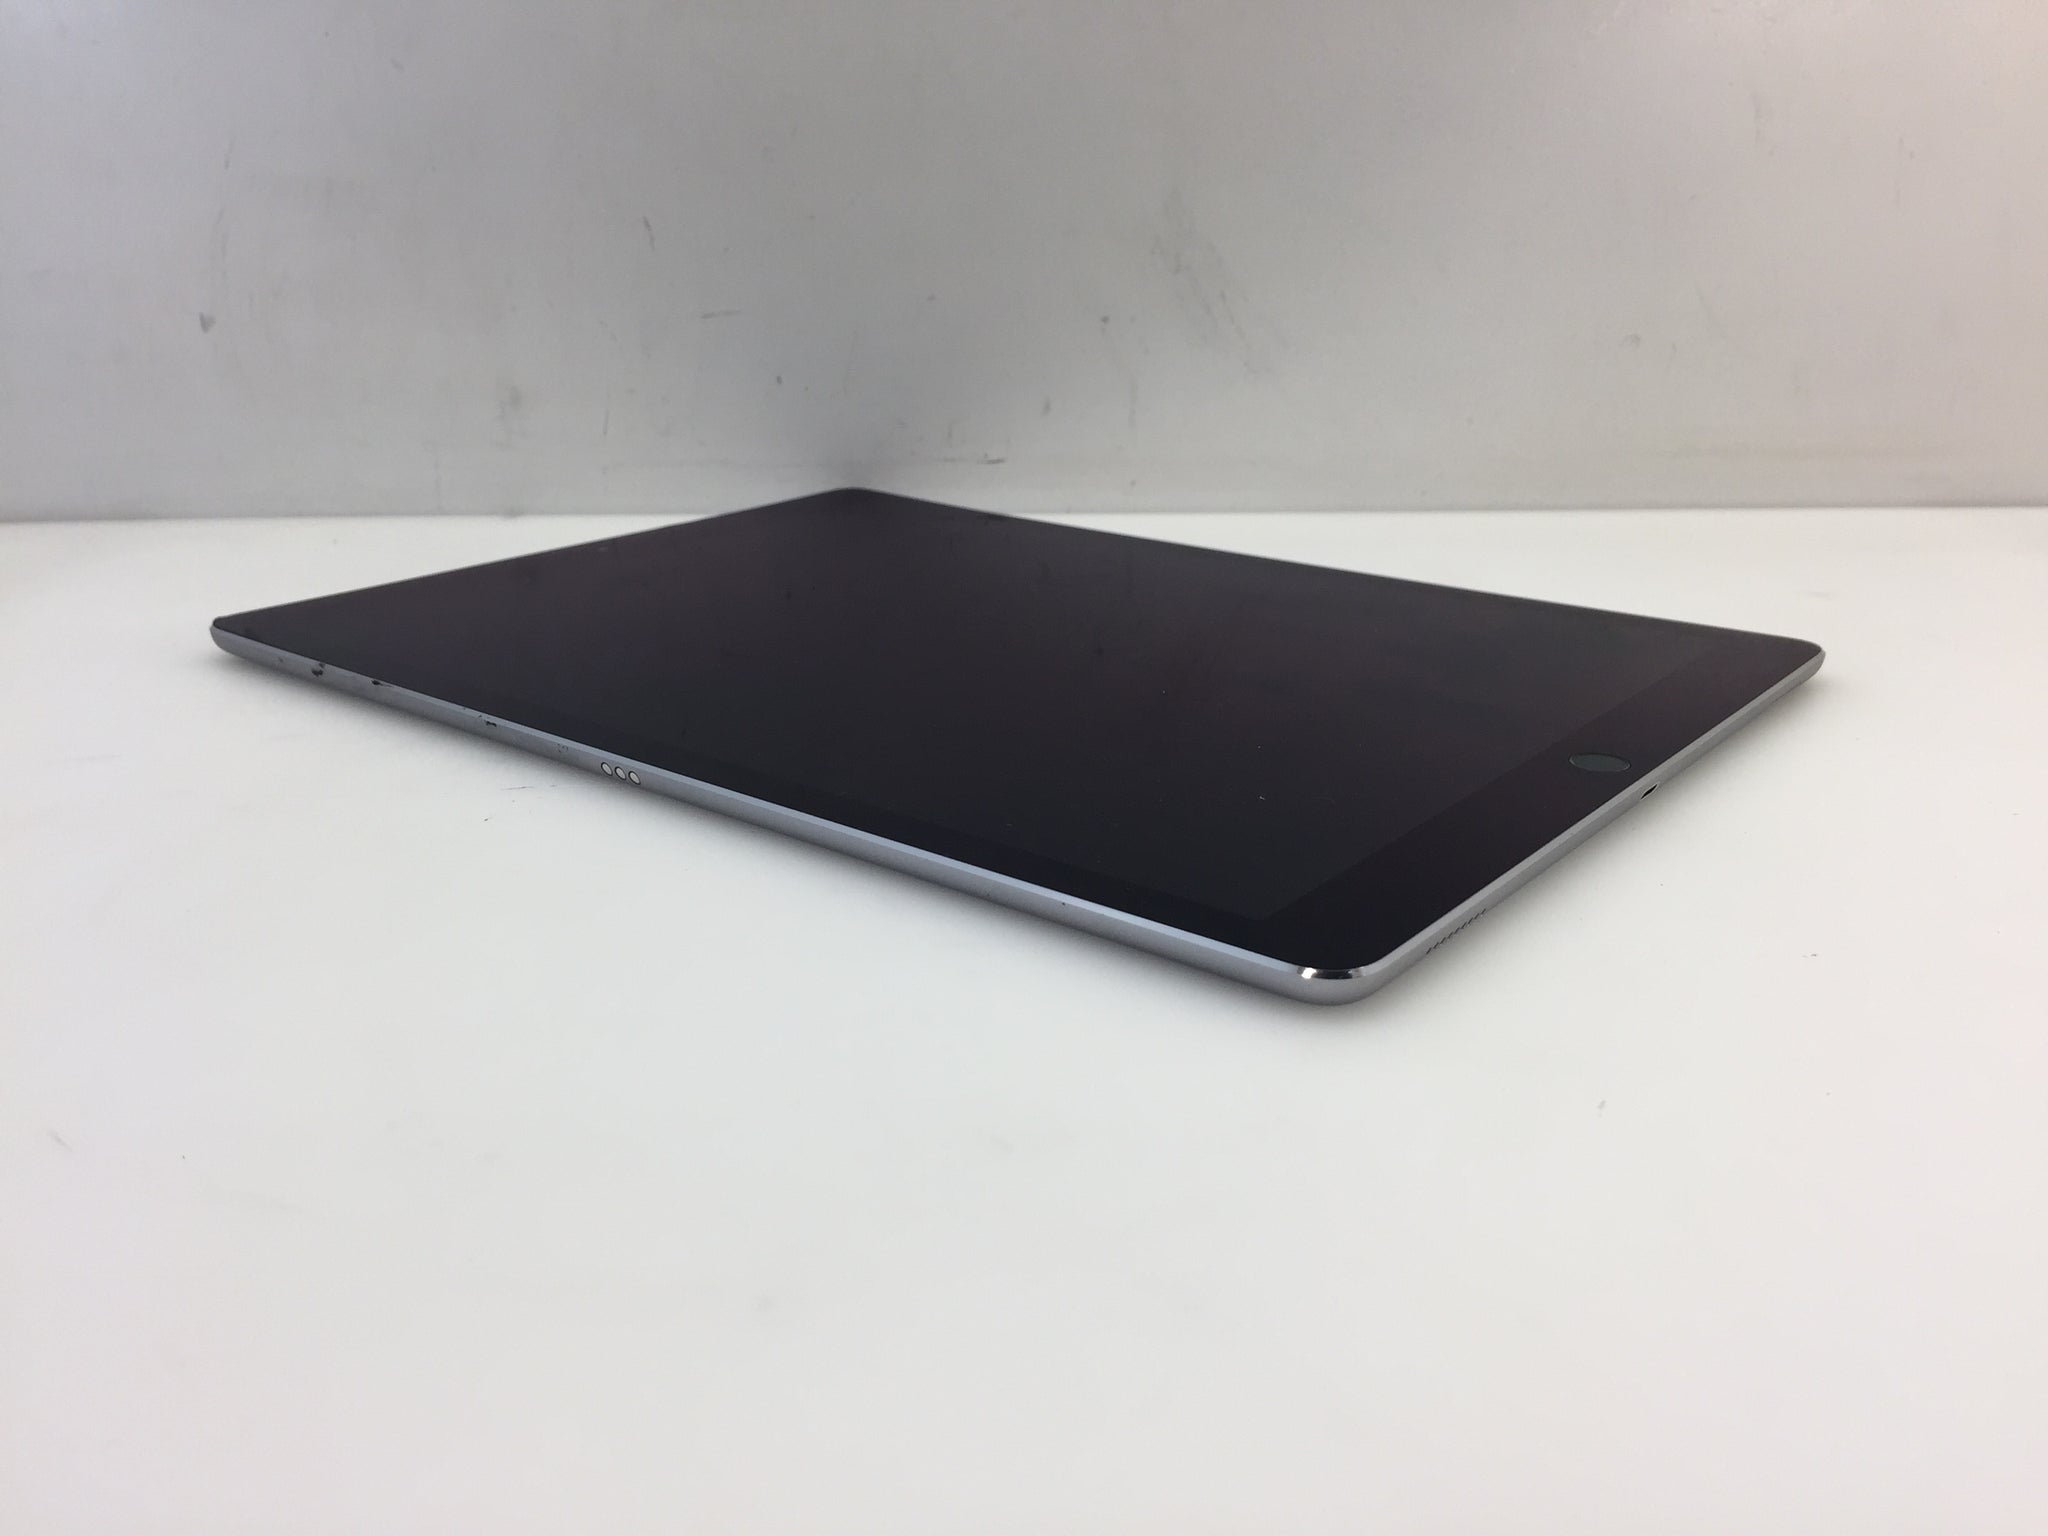 Apple iPad Pro 1st Gen. 128GB, Wi-Fi + 4G (Unlocked), 12.9